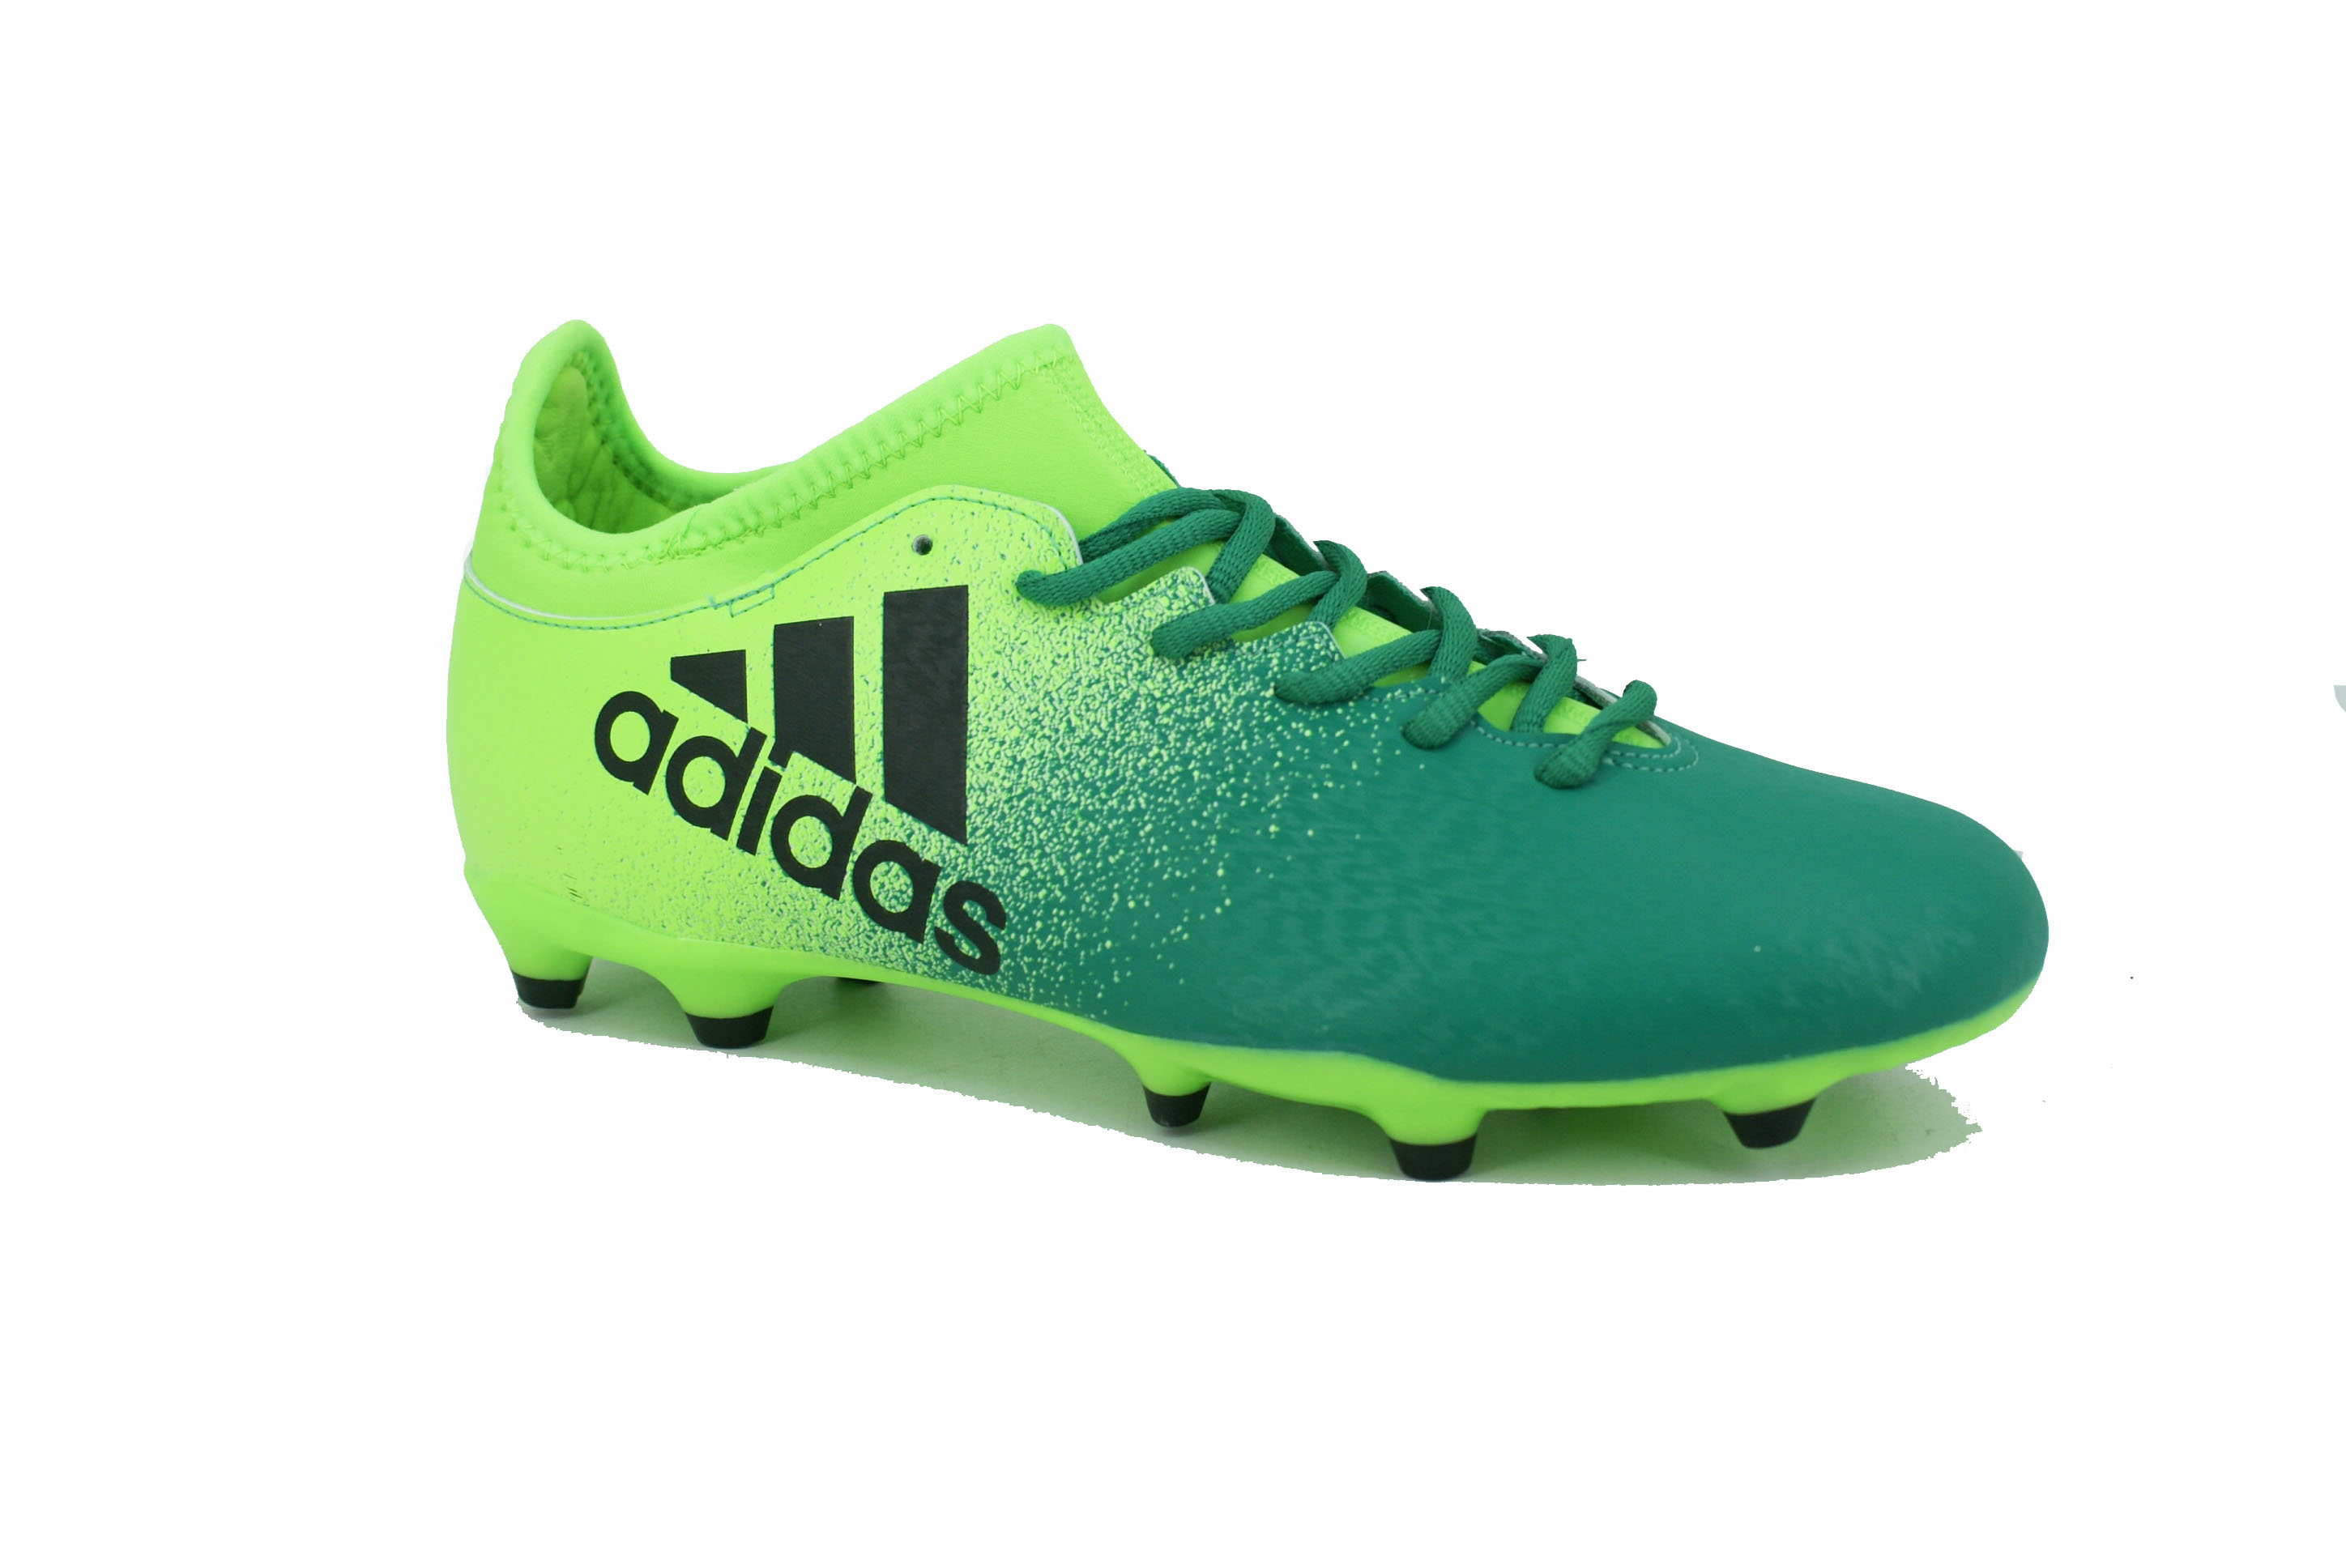 Botines Adidas X 16.3 Fijo Verde/Negro Hombre Deporfan - Zapatillas - E-Shop